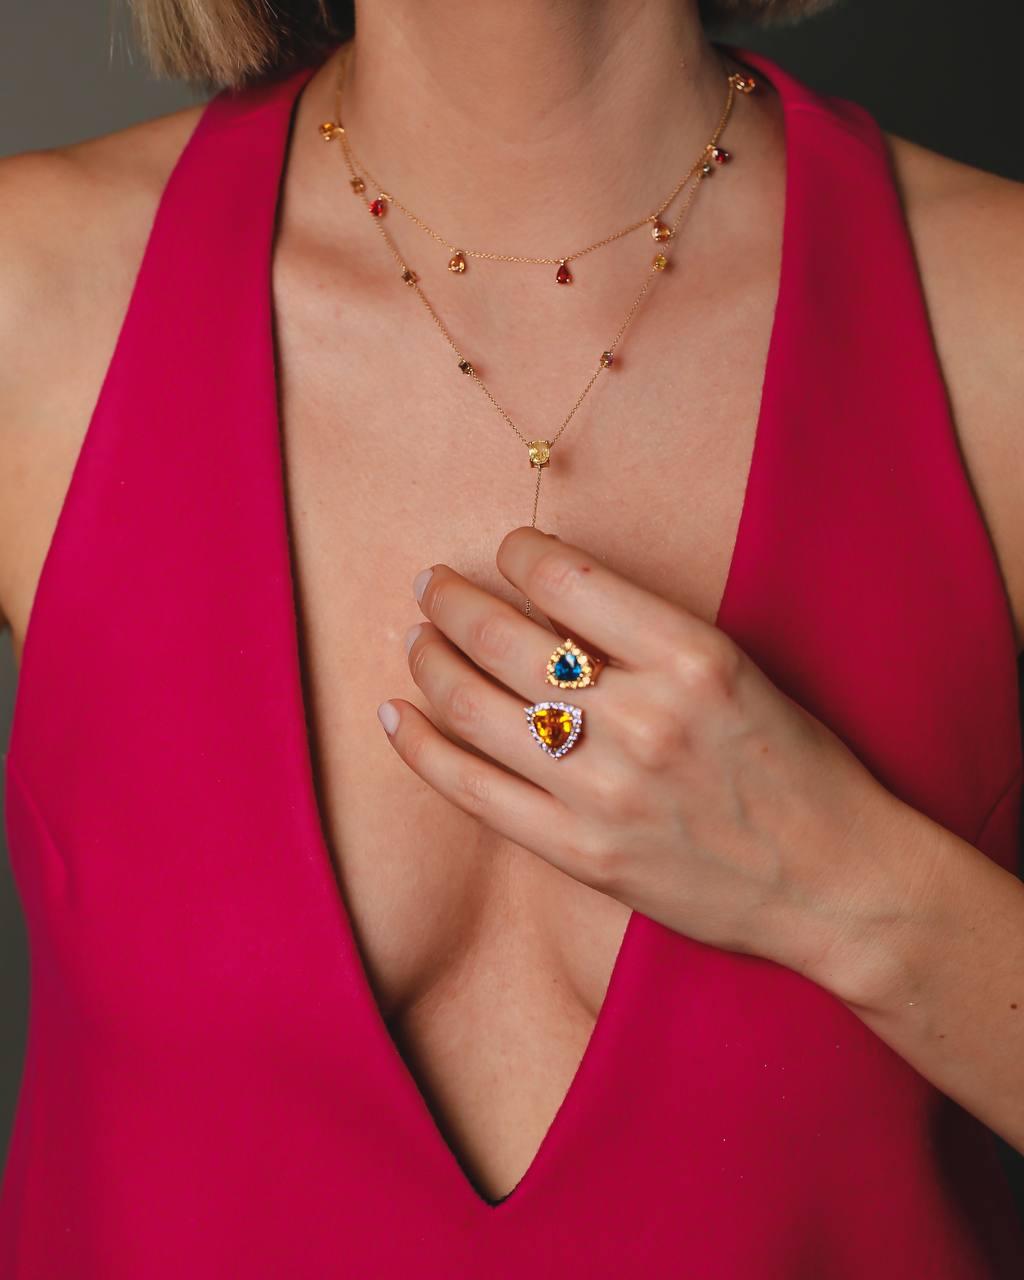 Äußerst stilvolle, modische Halskette mit 3,44 Karat mehrfarbigem Saphir-Anhänger aus 18 Karat Gelbgold.
Diese Halskette ist eine großartige Wahl sowohl für einen besonderen Anlass oder eine Party als auch für den Alltagsstil.
Die Halskette enthält